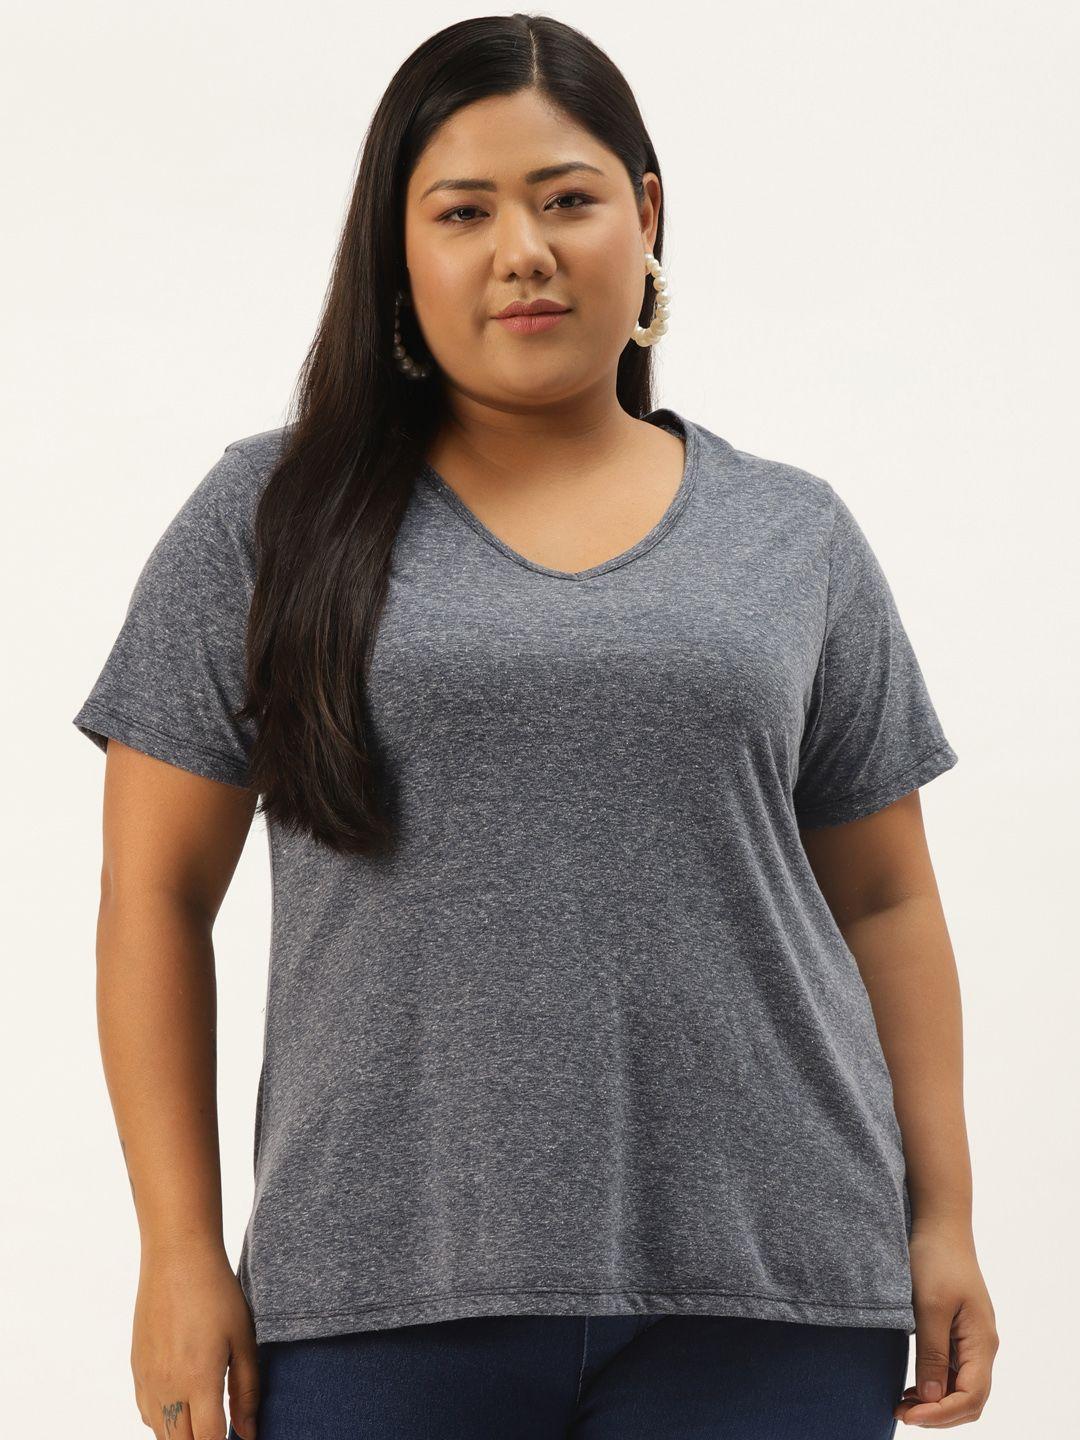 rute women plus size navy blue solid cotton v-neck t-shirt